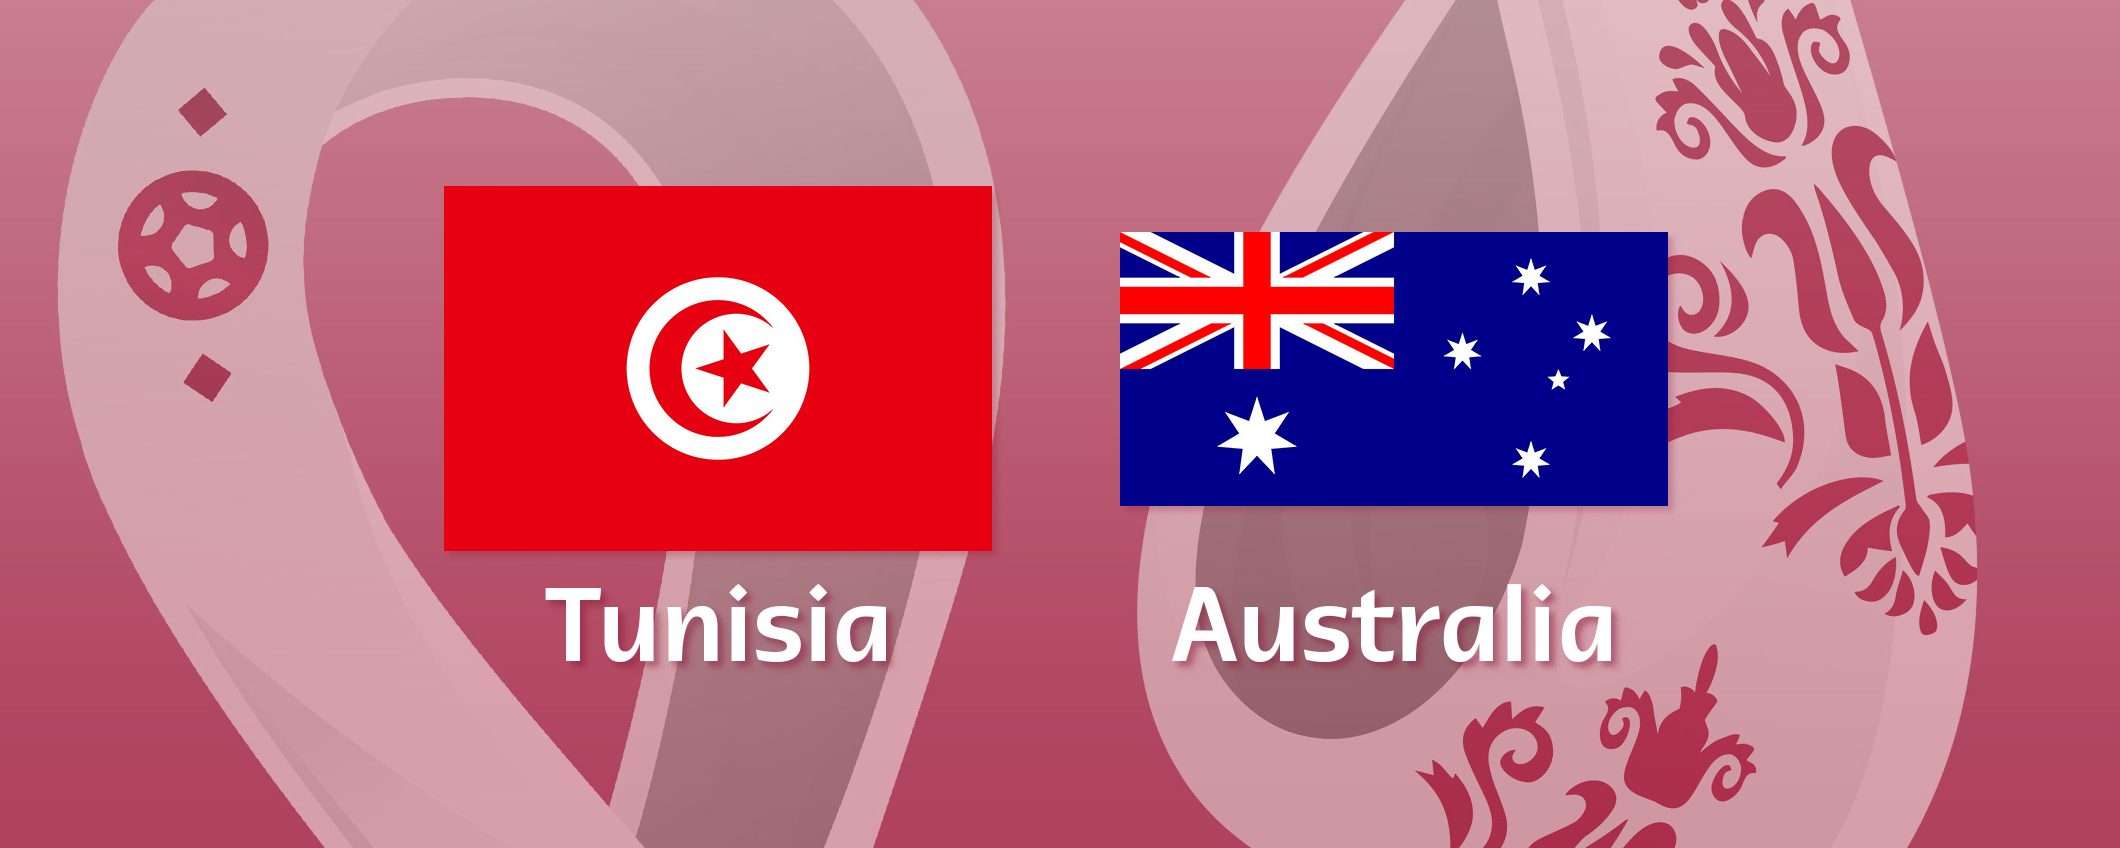 Come vedere Tunisia-Australia in streaming